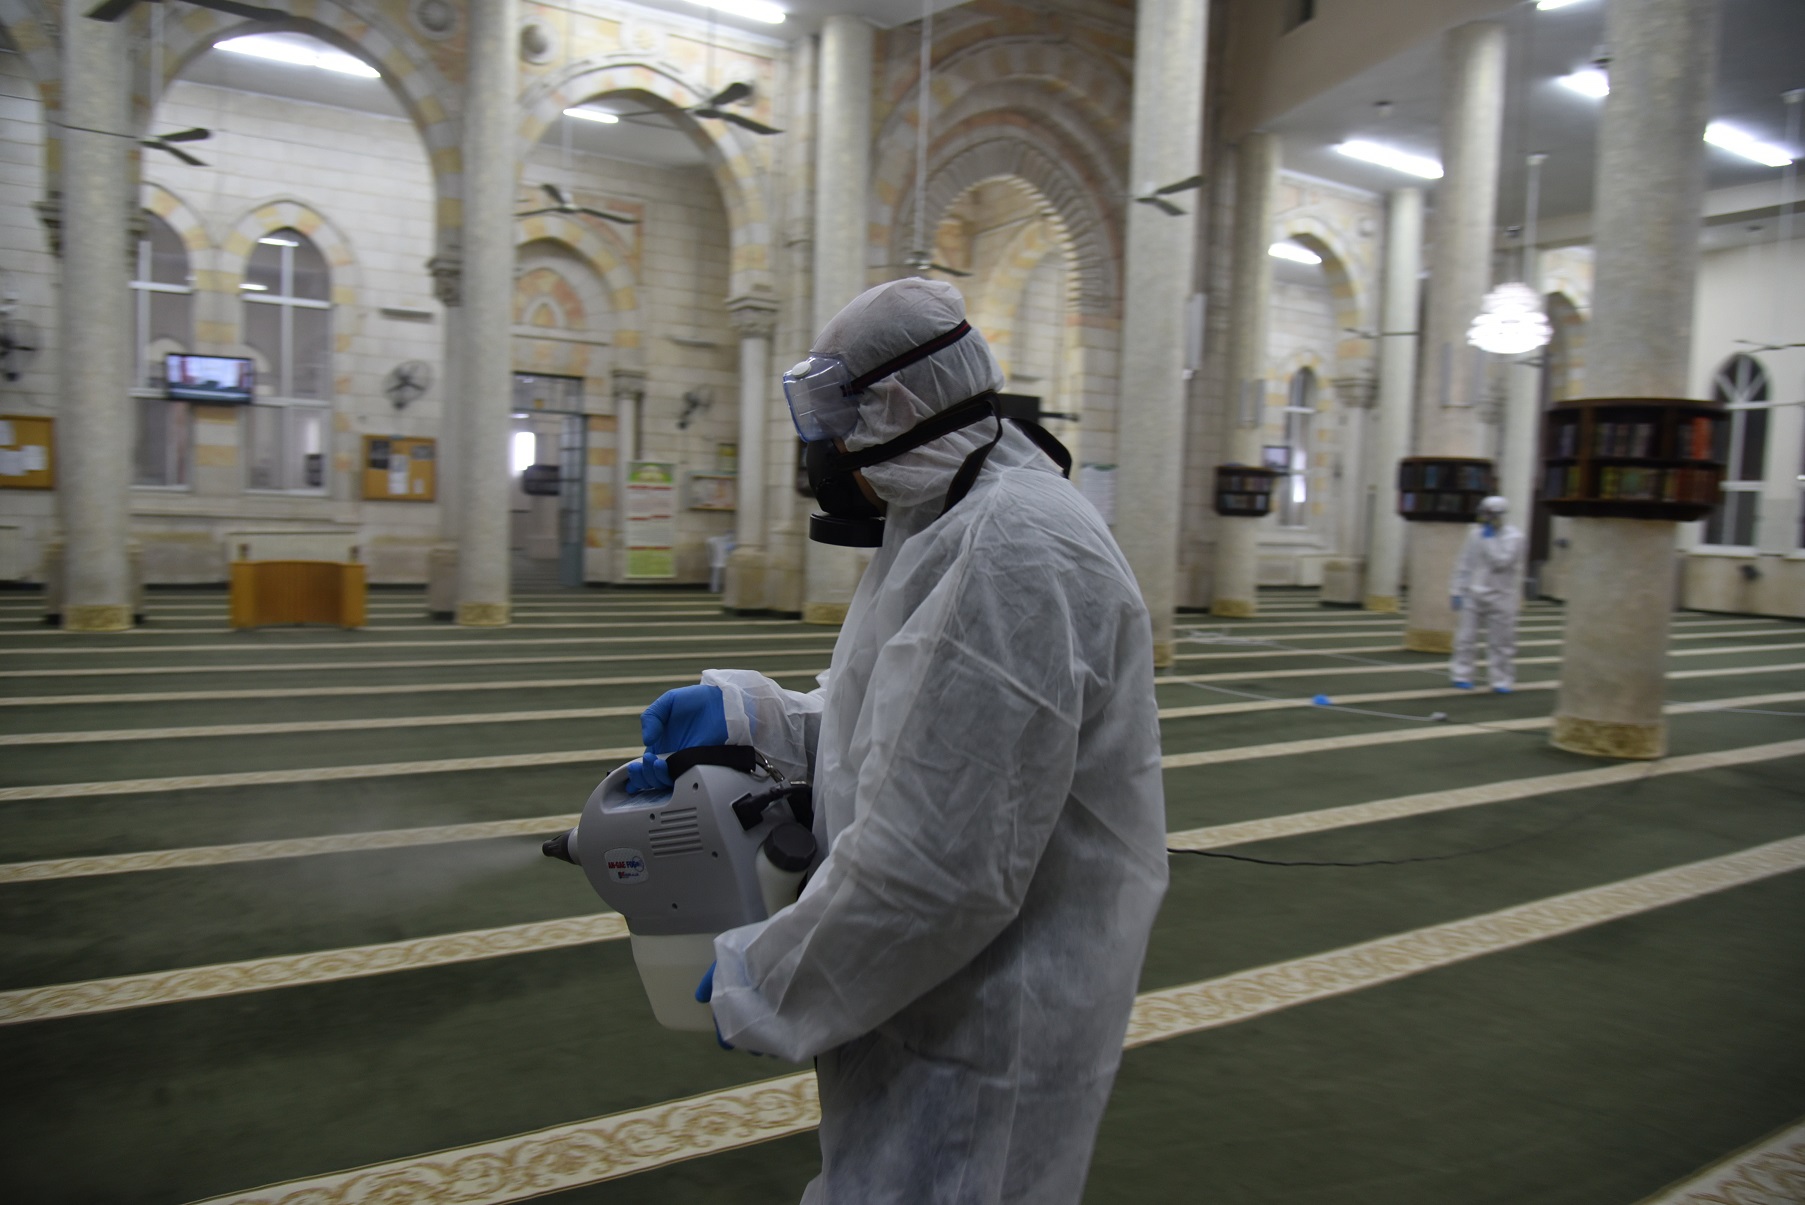 وزارة الأوقاف تفرض شروطا صارمة لدخول المساجد (وثيقة)